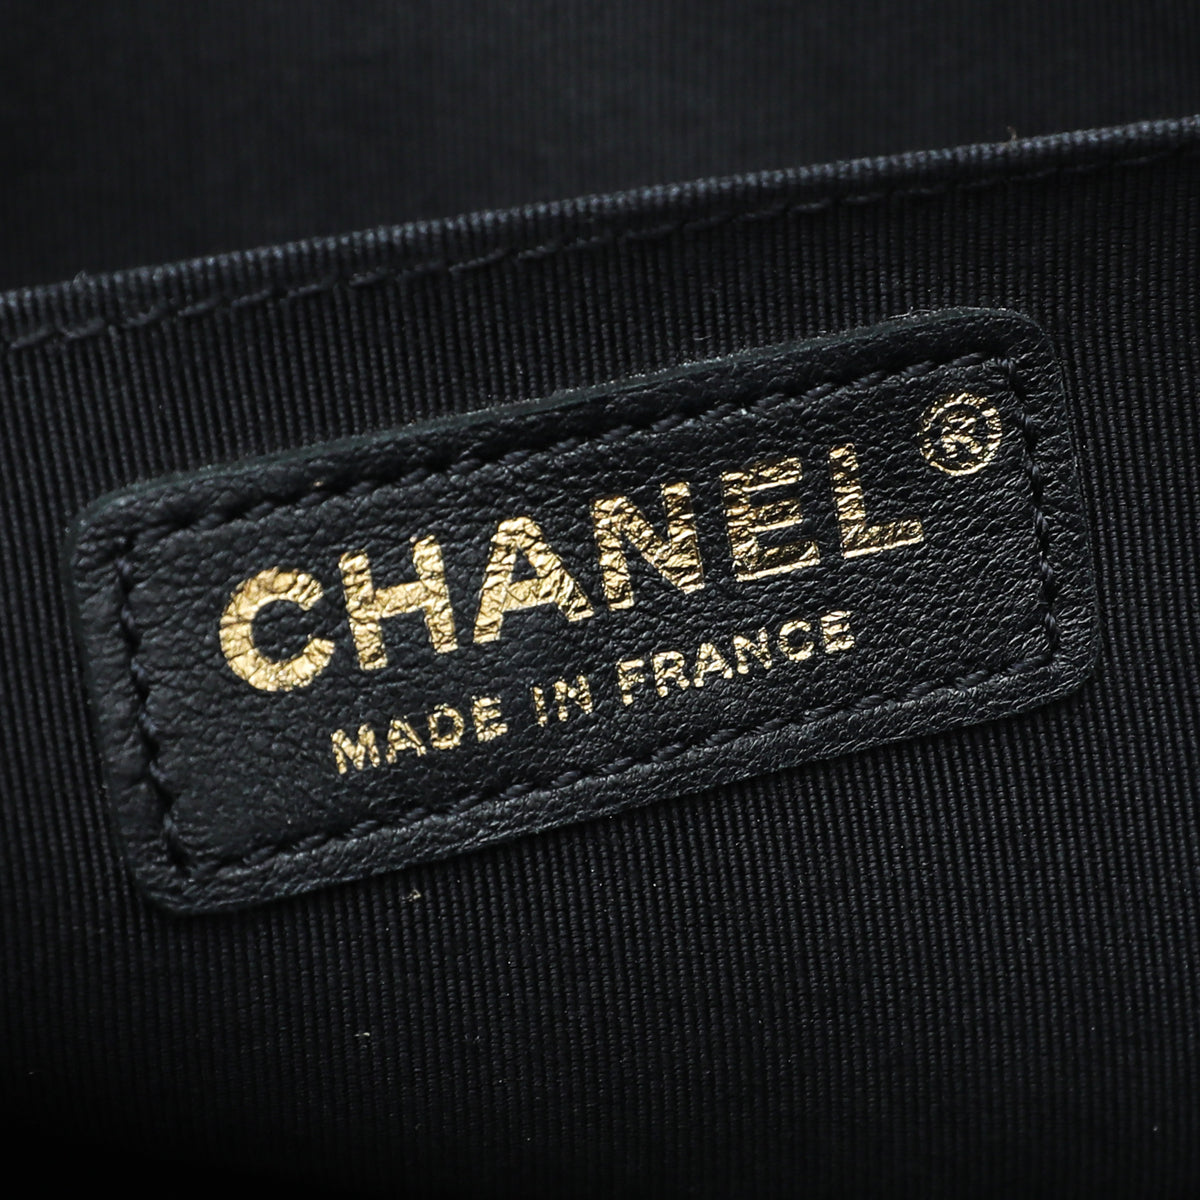 Chanel Black Le Boy Medium Flap Bag